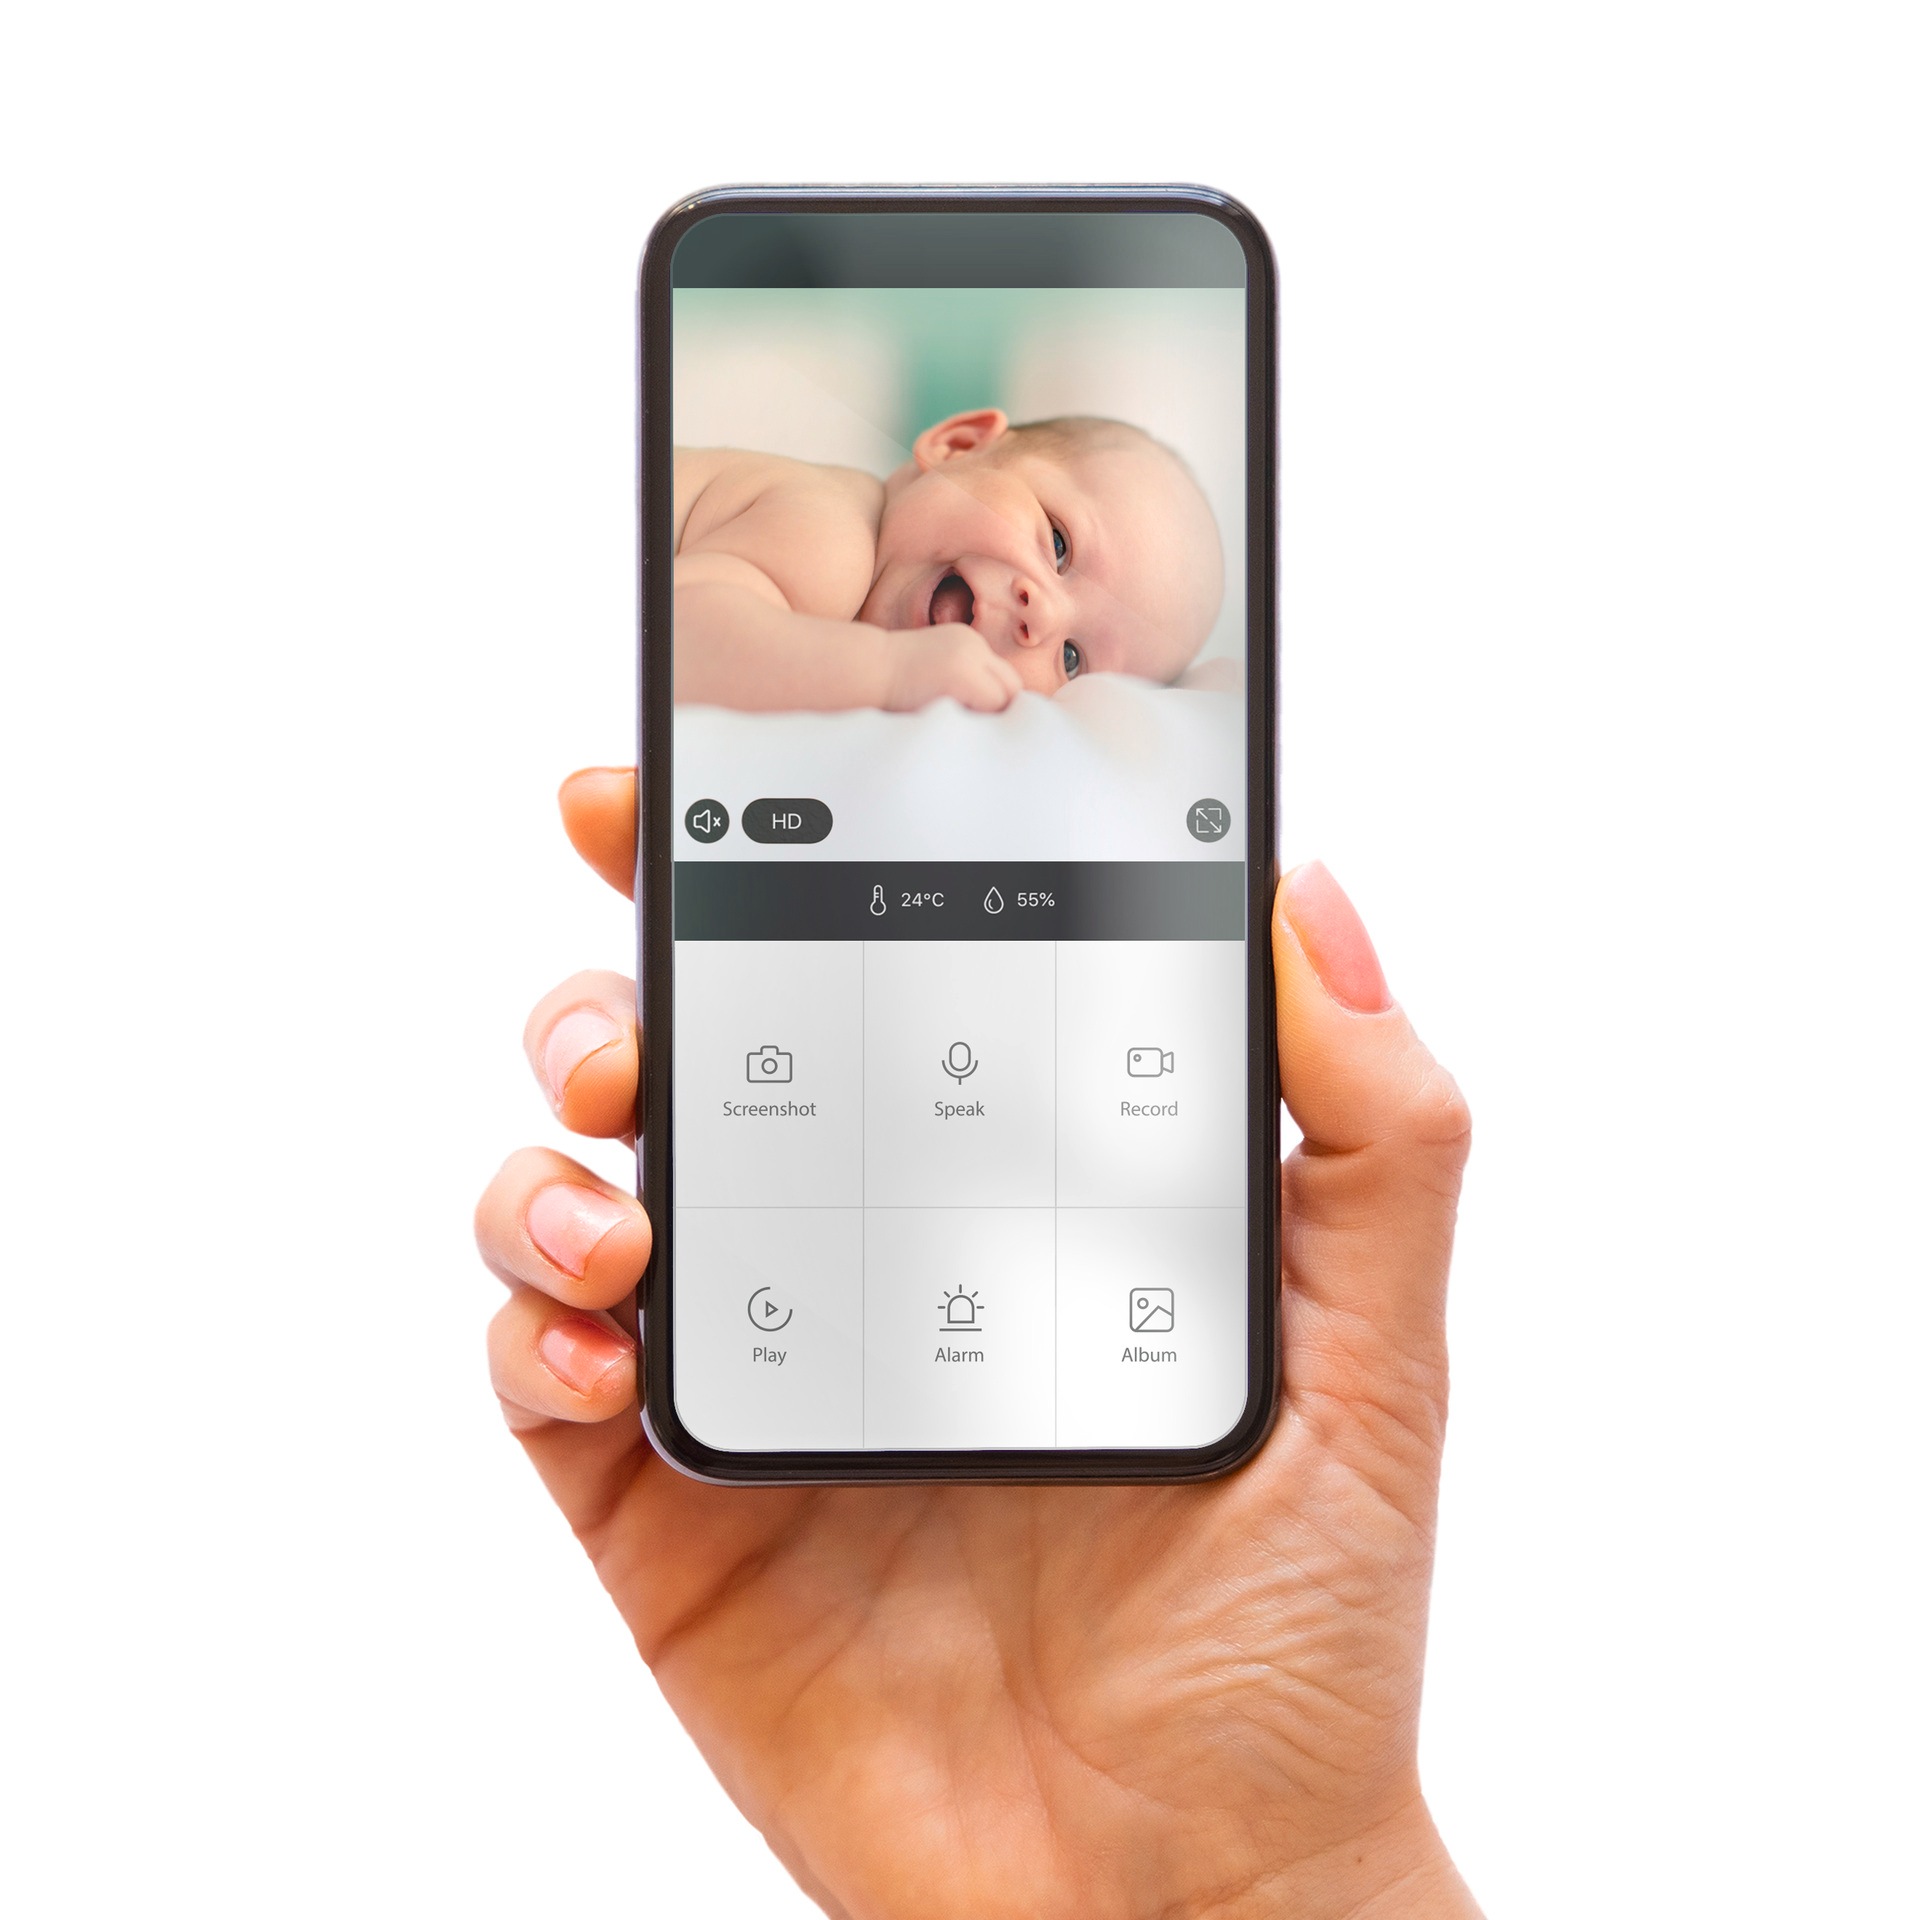 Alecto Video-Babyphone »SMARTBABY5 - WLAN-Babyphone mit Kamera«, mit Rückmeldefunktion, Smart Life App für iOS und Android